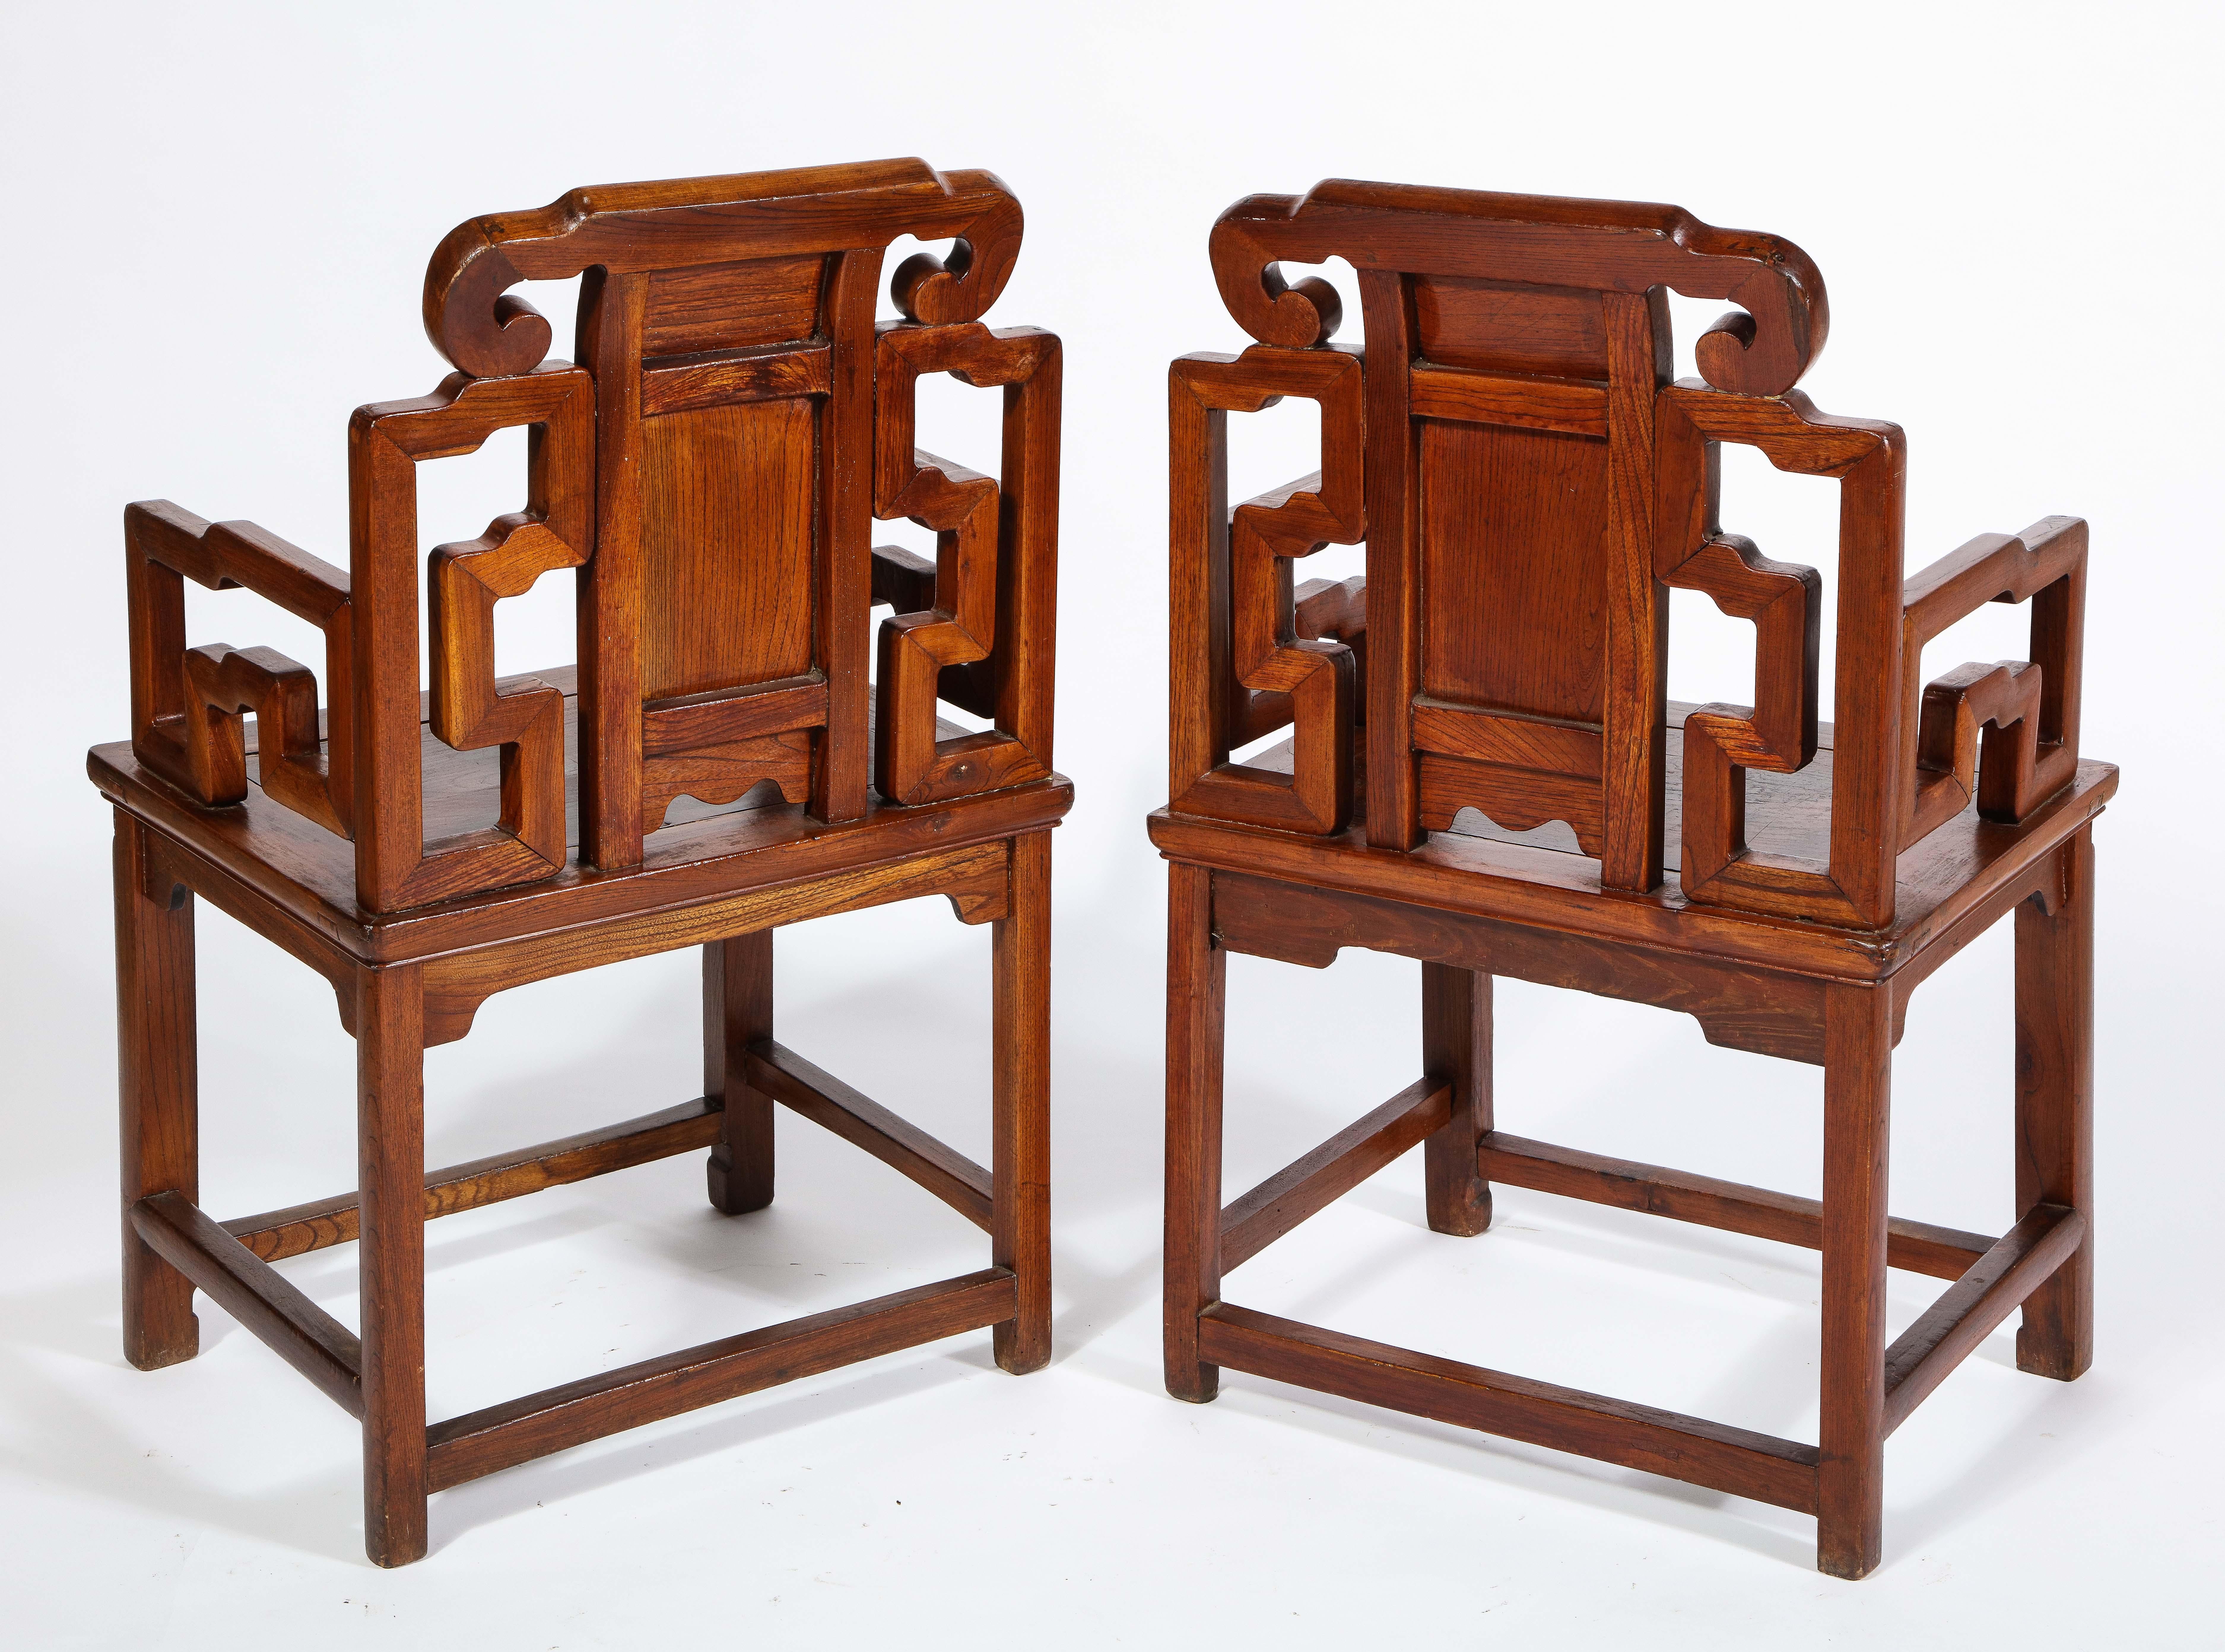 Fin du XIXe siècle Paire de chaises chinoises en bois dur avec motifs ajourés et panneaux en haut-relief en vente